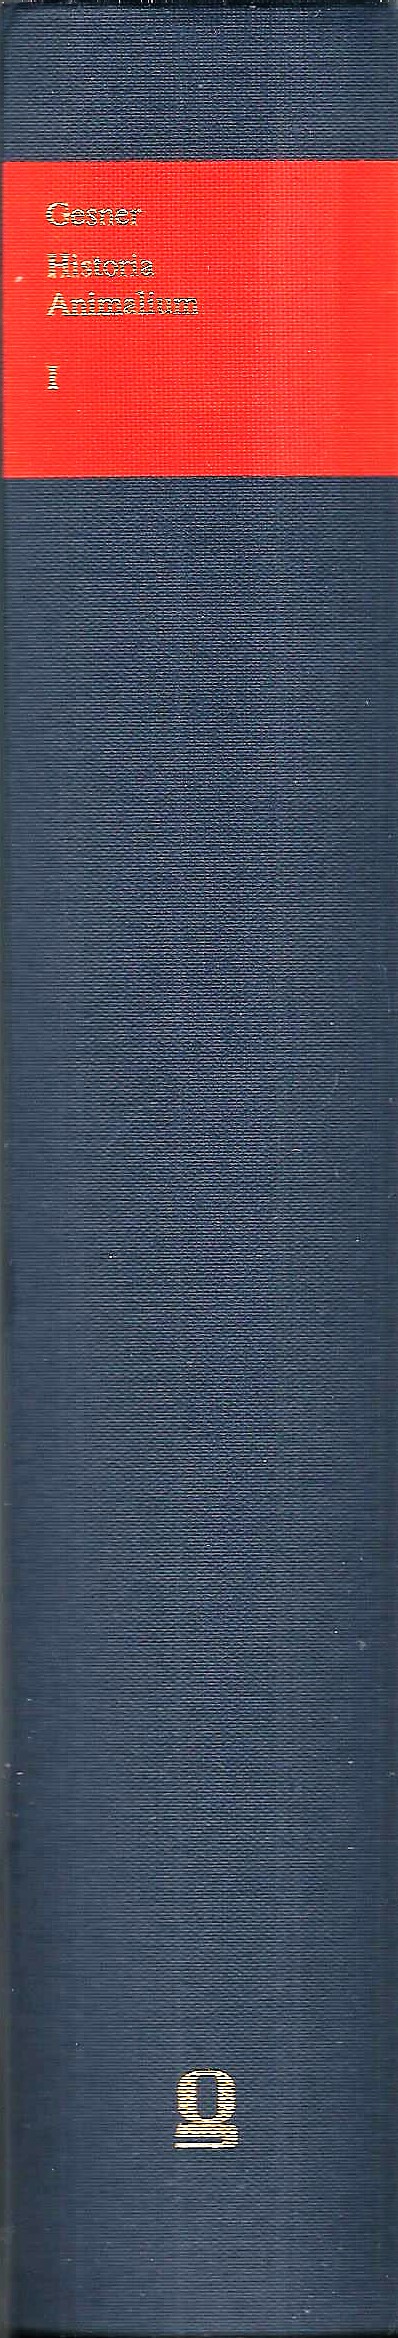 Historia Animalium; Liber I (1) de Quadrupedibus viviparis (De Alce - De Equo) = 1 Buch - Gesner (Gessner), Conrad; Breidbach, Olaf, Hrsg./Einleitung